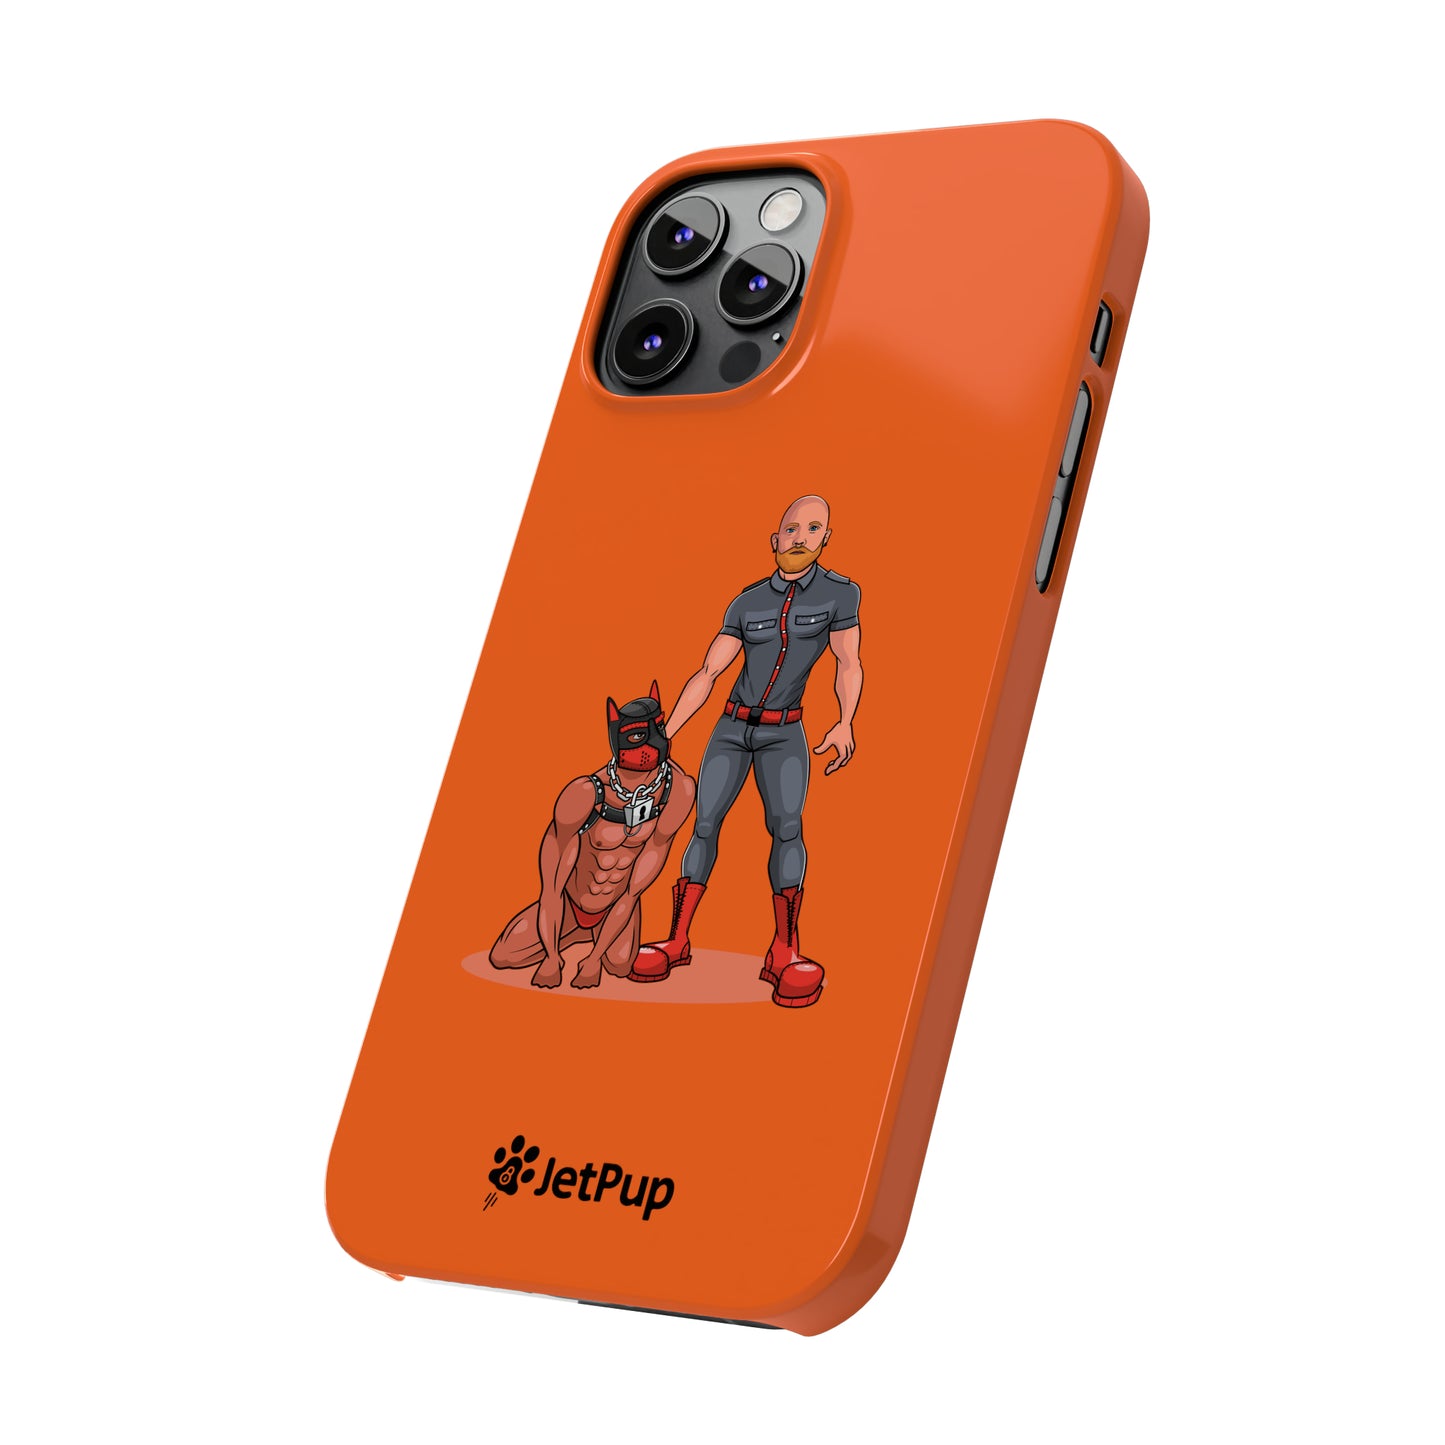 Dad & Pup Slim iPhone Cases - Orange